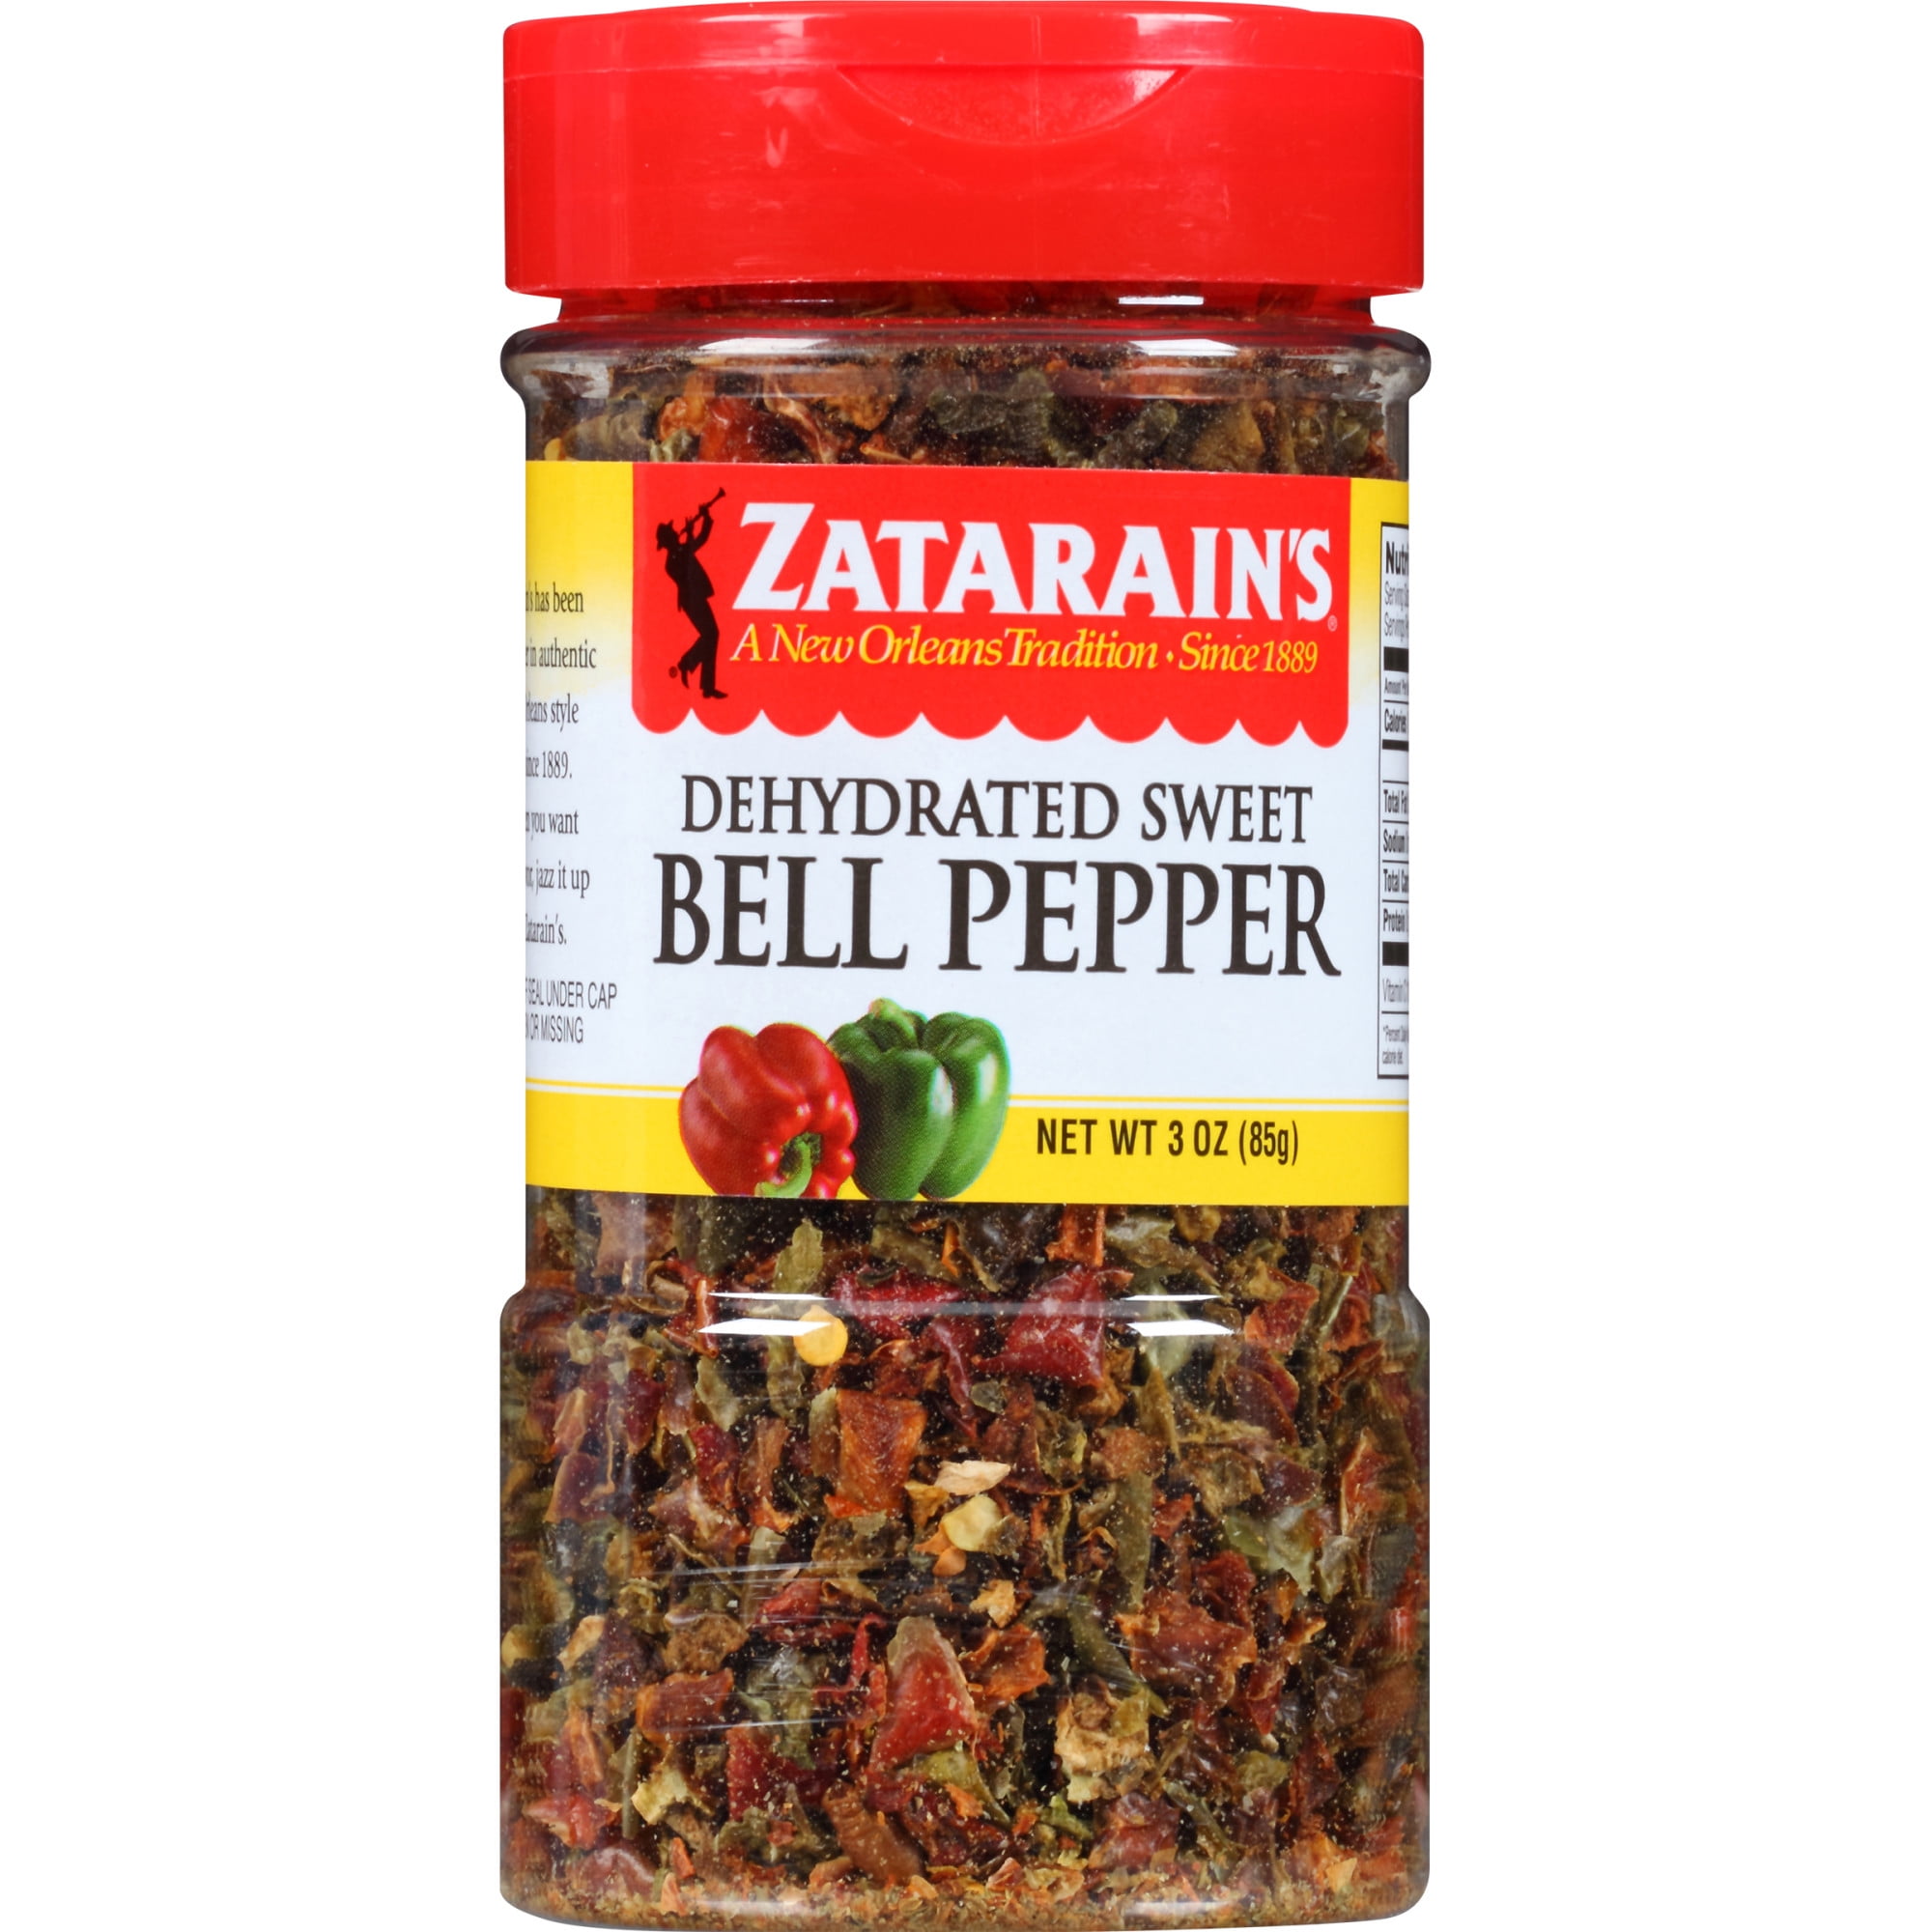 Green Bell Pepper, 1 ct, 6 oz